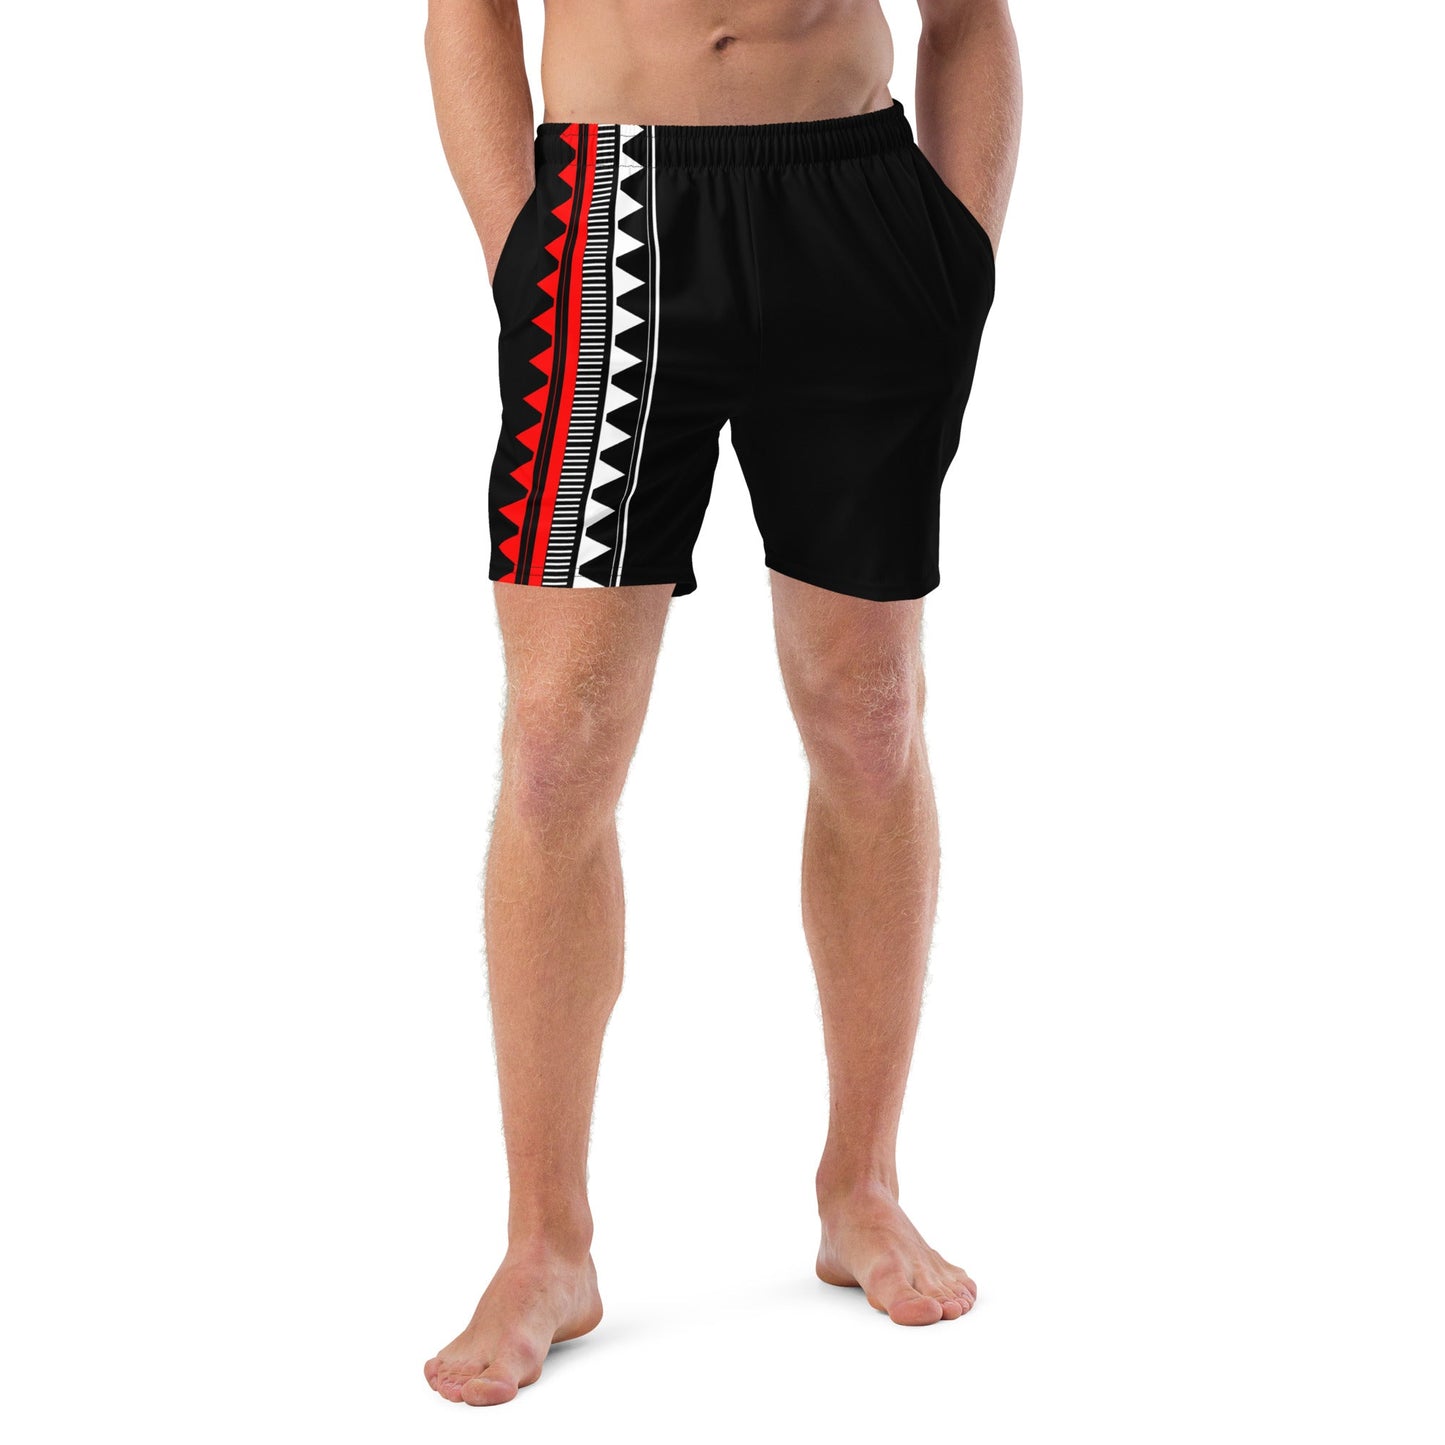 Native Men's swim trunks - Nikikw Designs